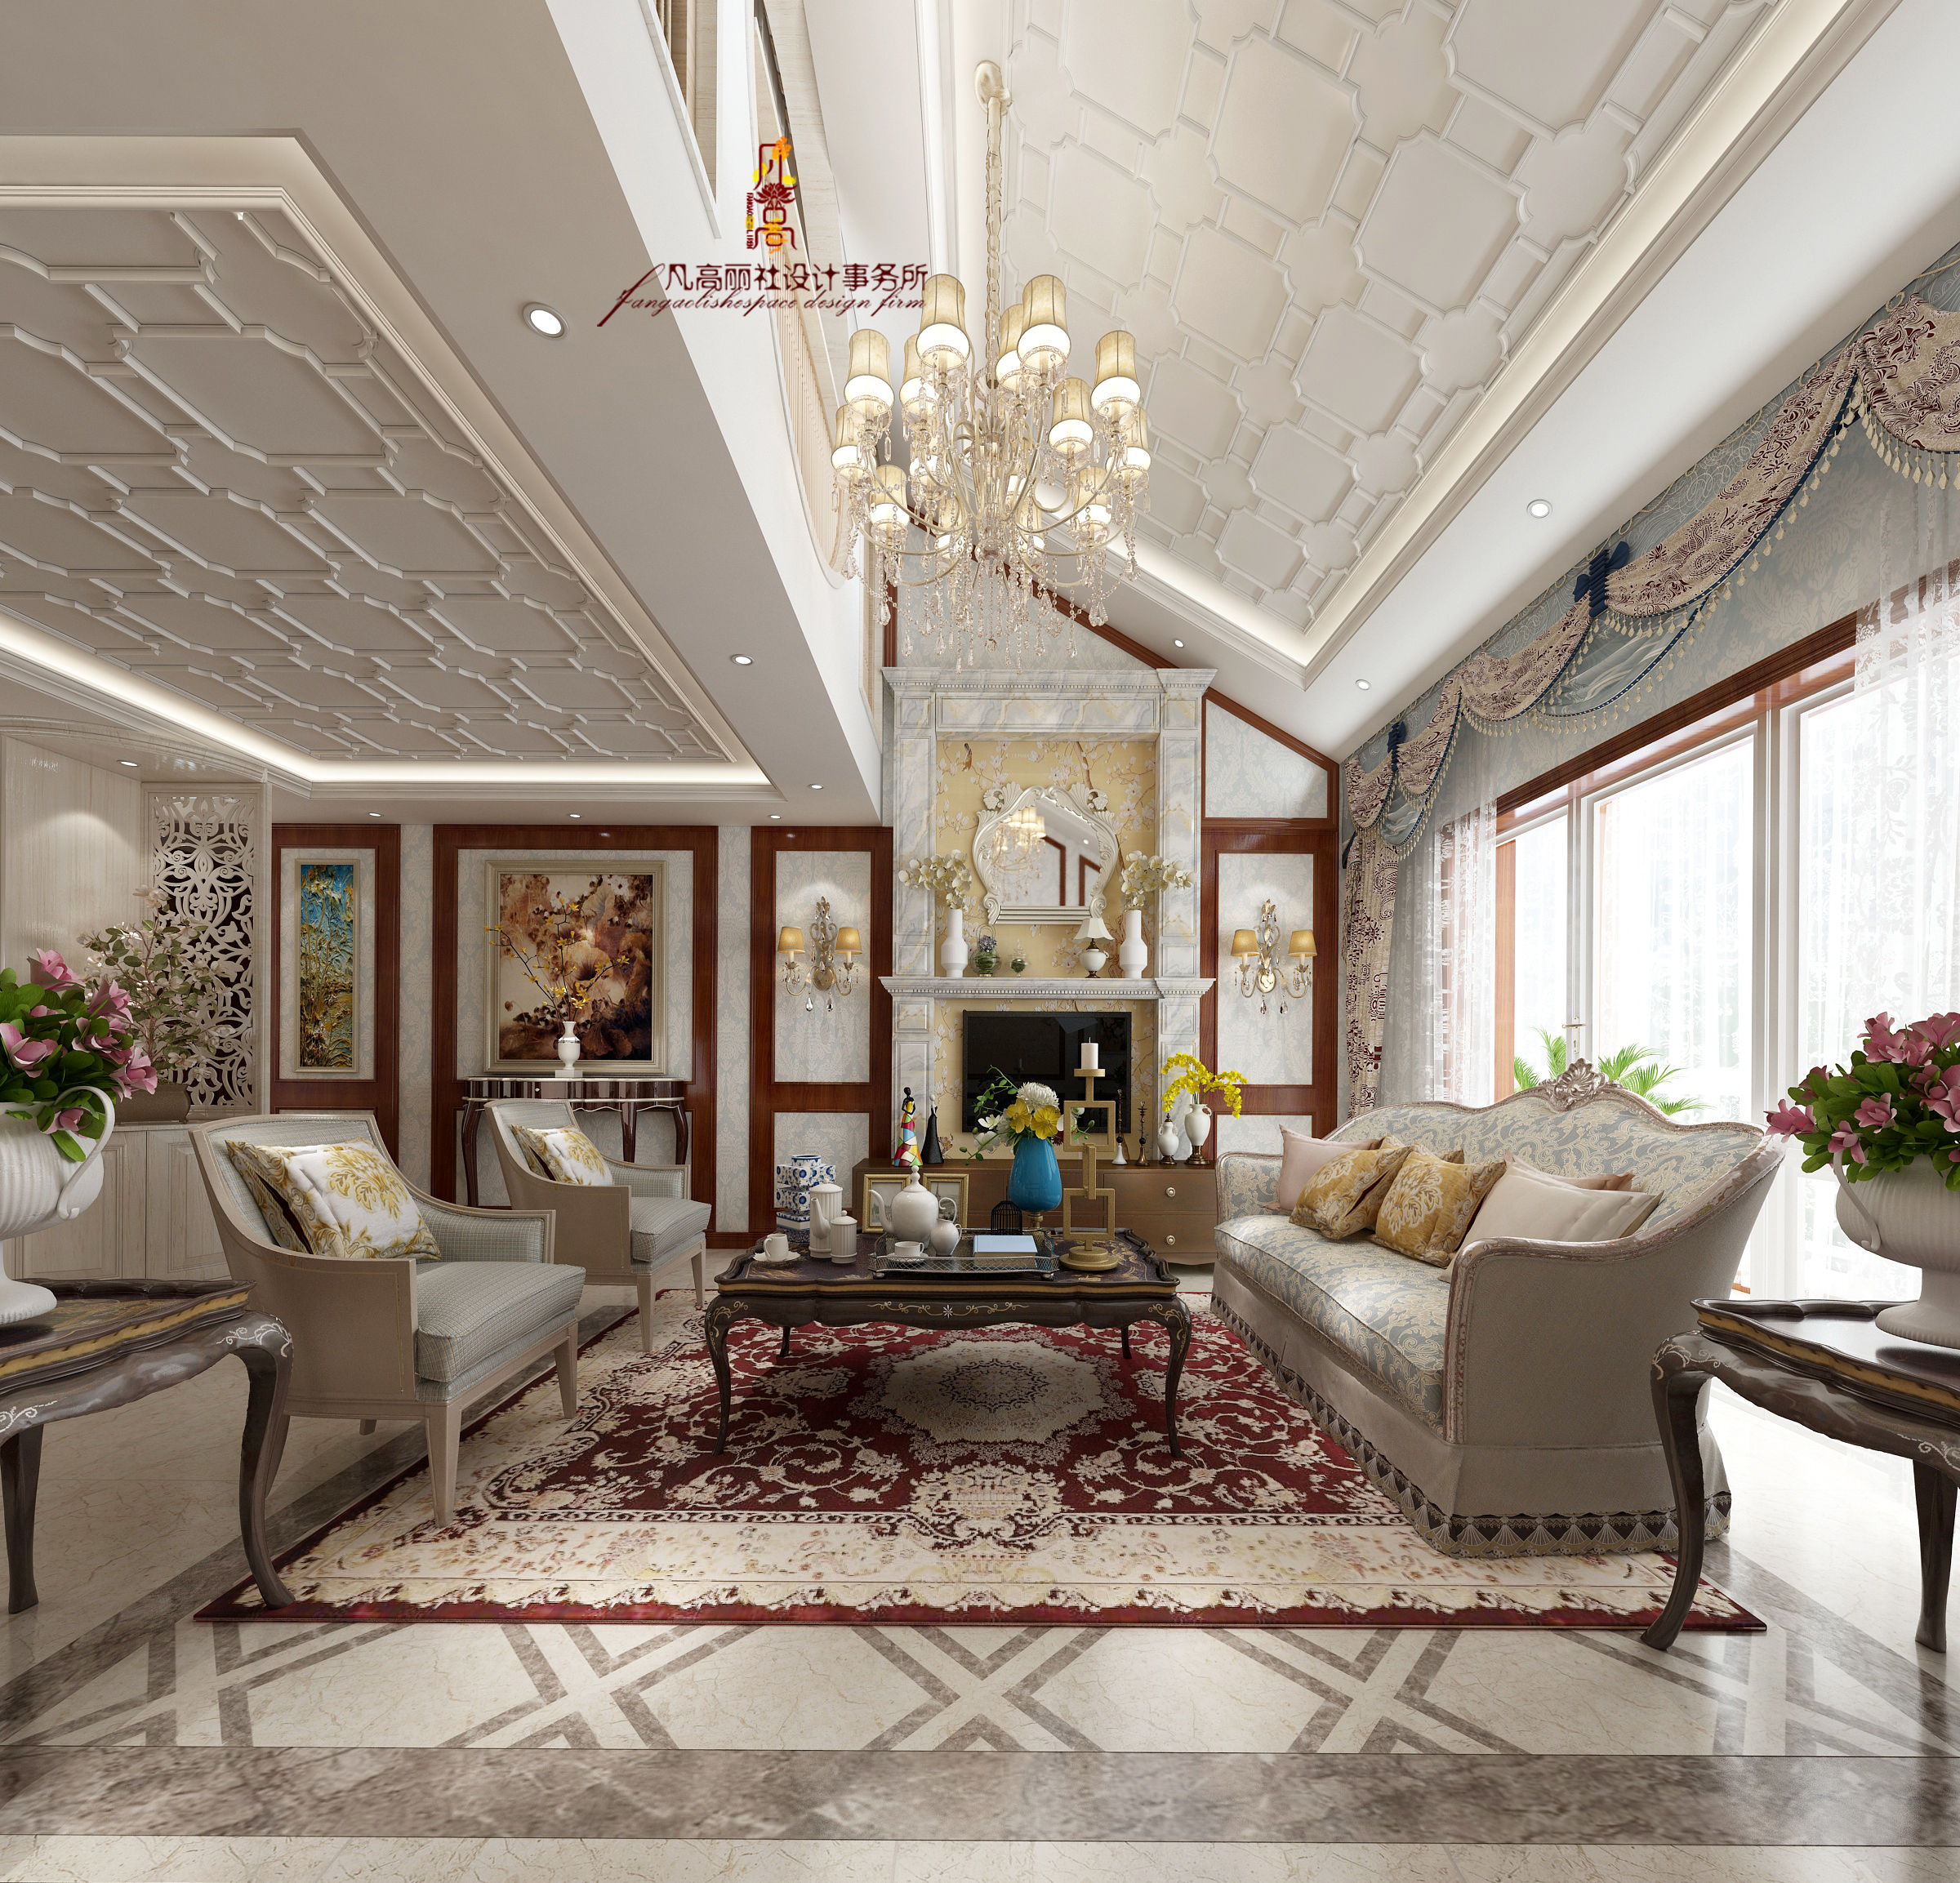 新美式 新古典 原创设计 客厅图片来自天津凡高丽社空间设计事务所在美式新古典-轻奢生活的分享